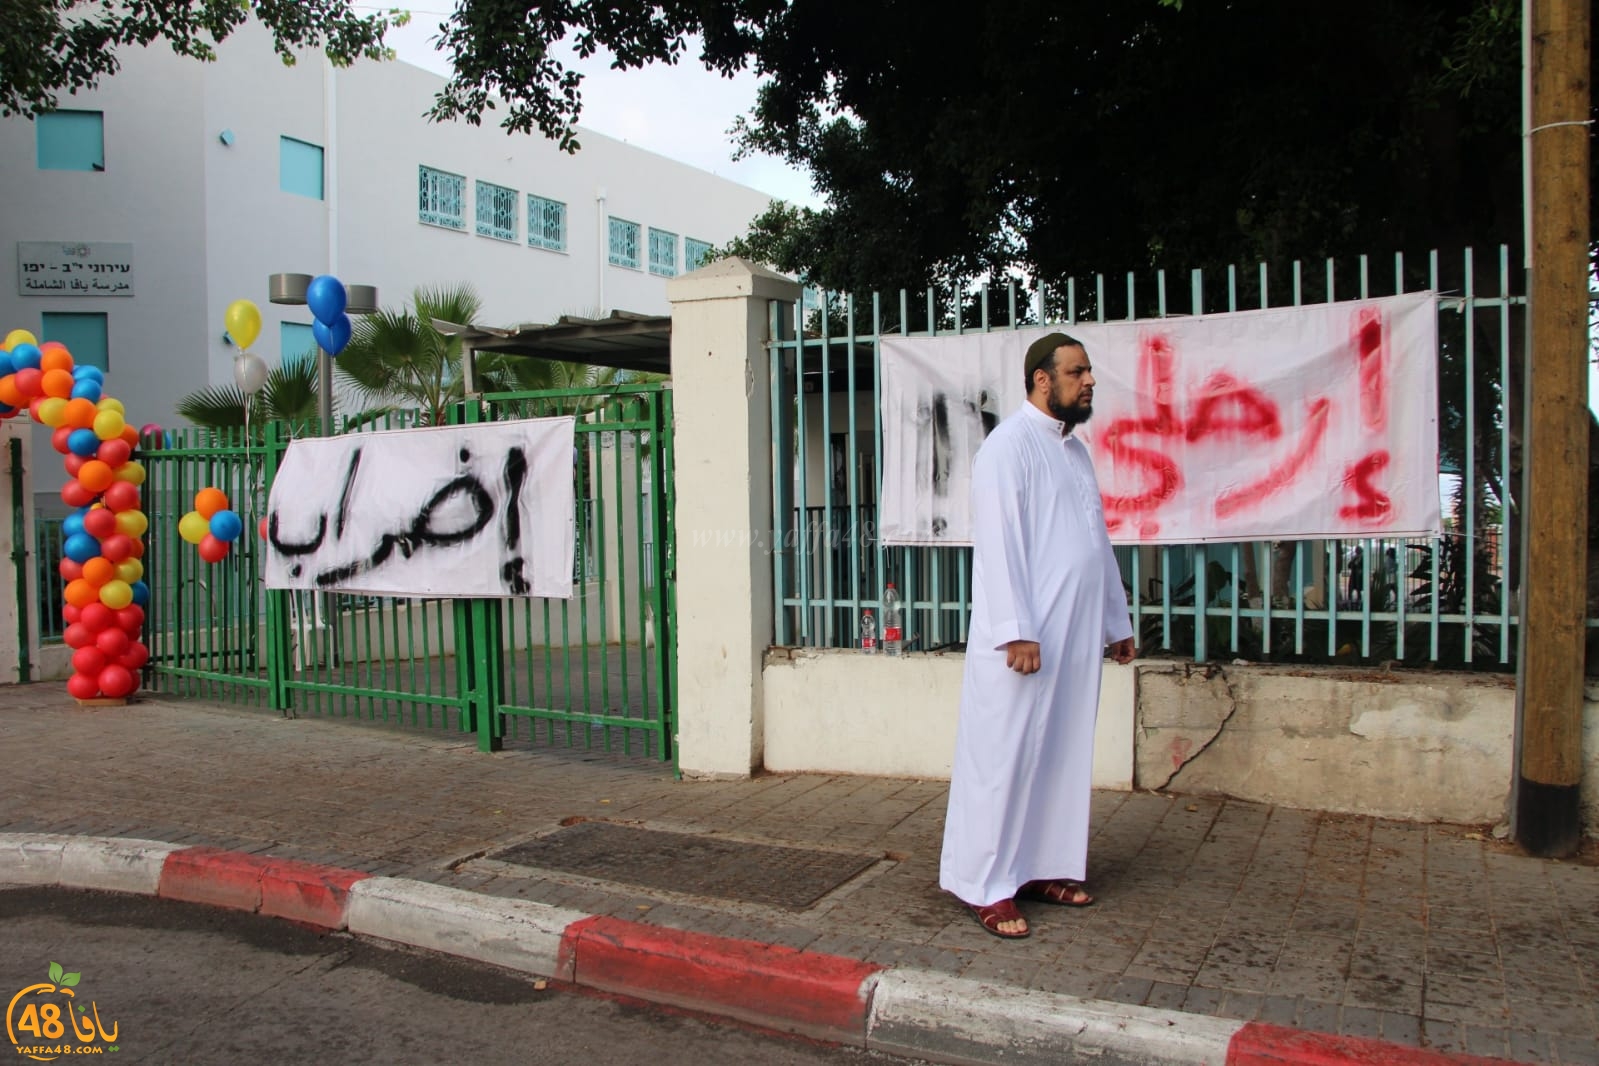   اليوم: إضراب في مدرسة الثانوية الشاملة وانتظام الدراسة في بقية مدارس يافا